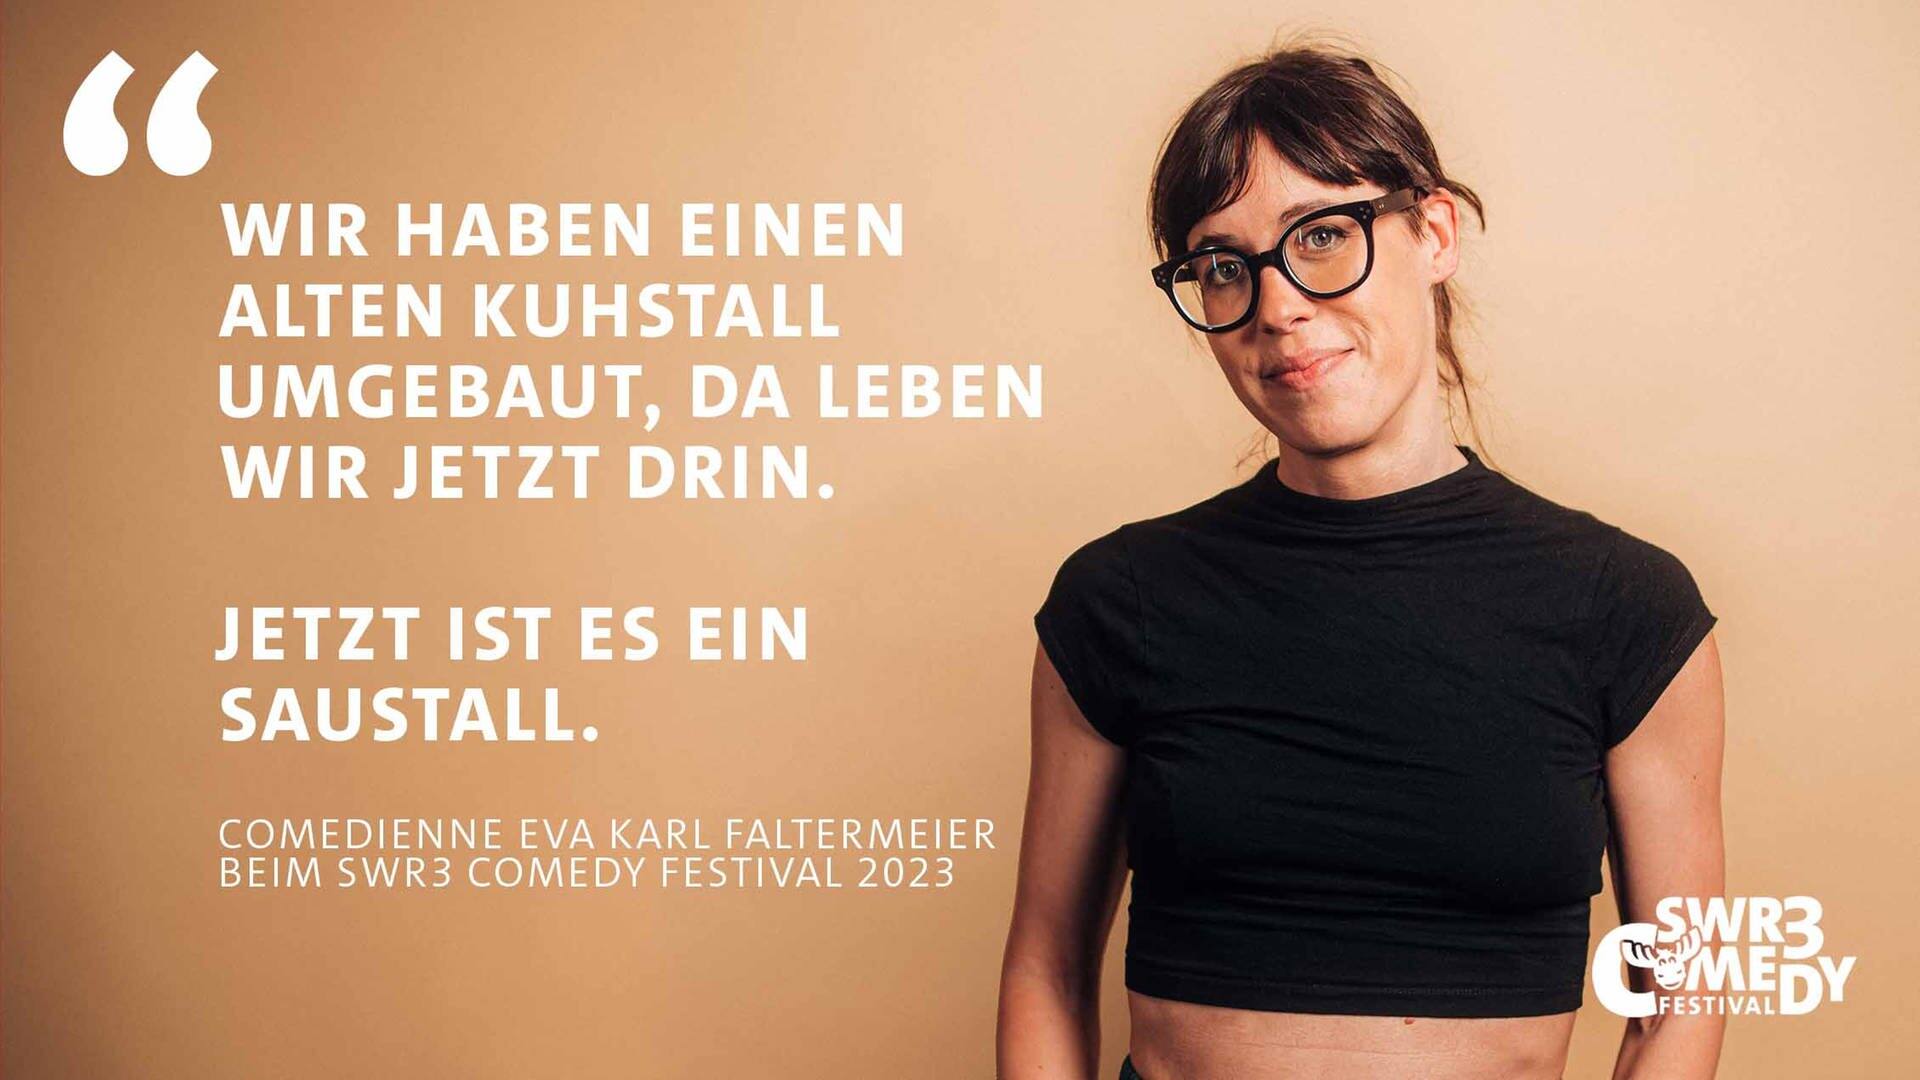 Auf hellbraunem Hintergrund ist ein Zitat von Eva Karl Faltermeier beim SWR3 Comedy Festival zu lesen: "Wir haben einen alten Kuhstall umgebaut, da wohnen wir jetzt drin. Jetzt ist es ein Saustall."  Die Comiedienne ist rechts auf dem Bild zu sehen.